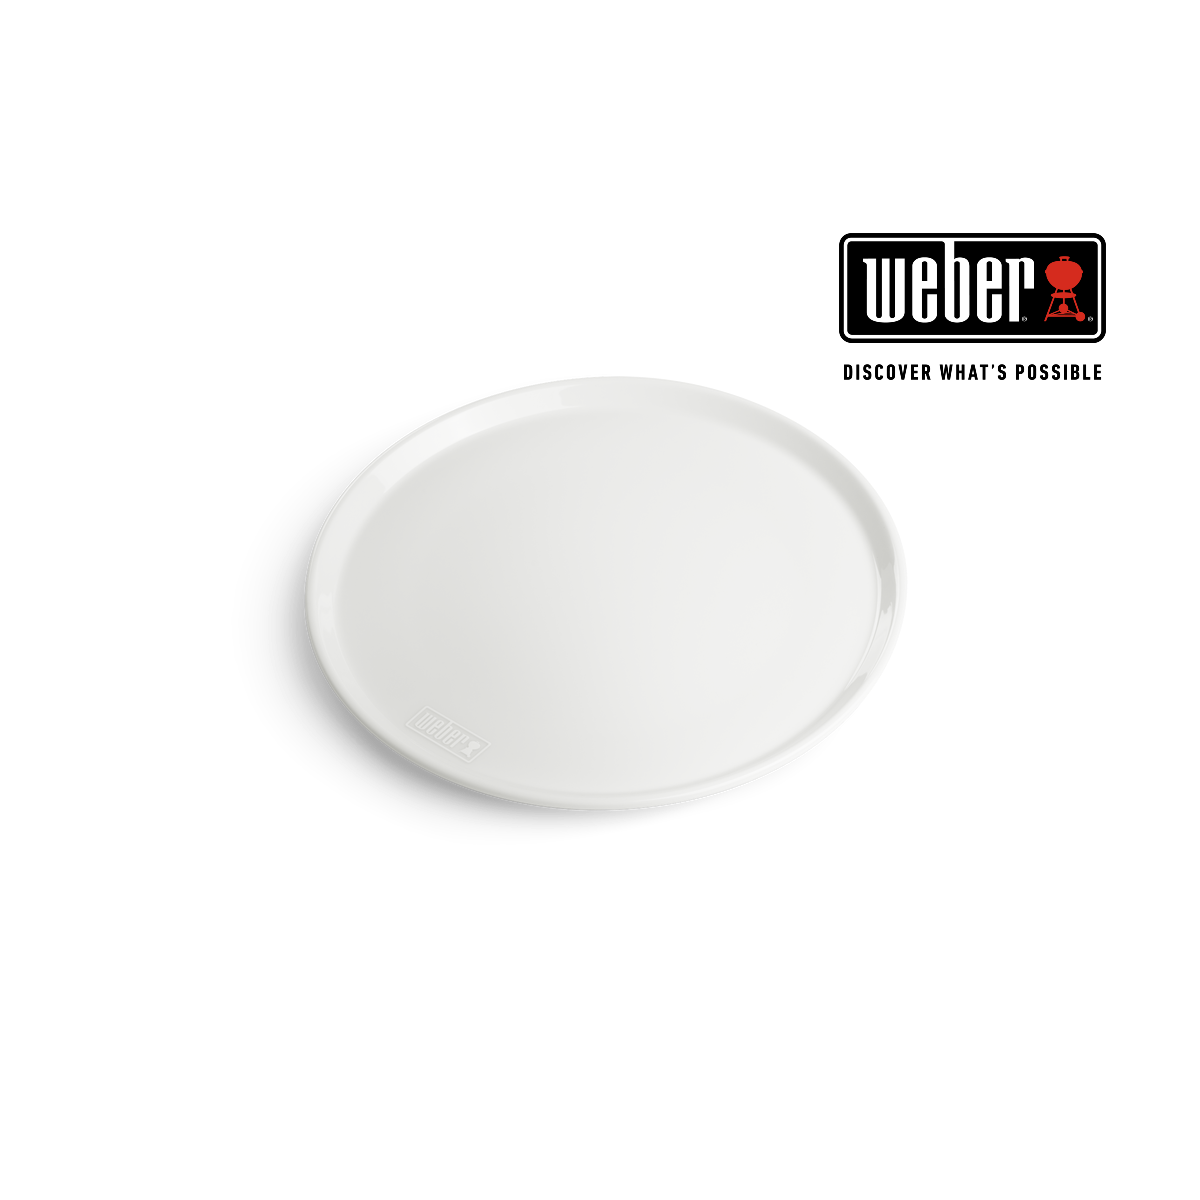 WEBER DINNER PLATE - Ø 27,5 CM, SET OF 2, 17880